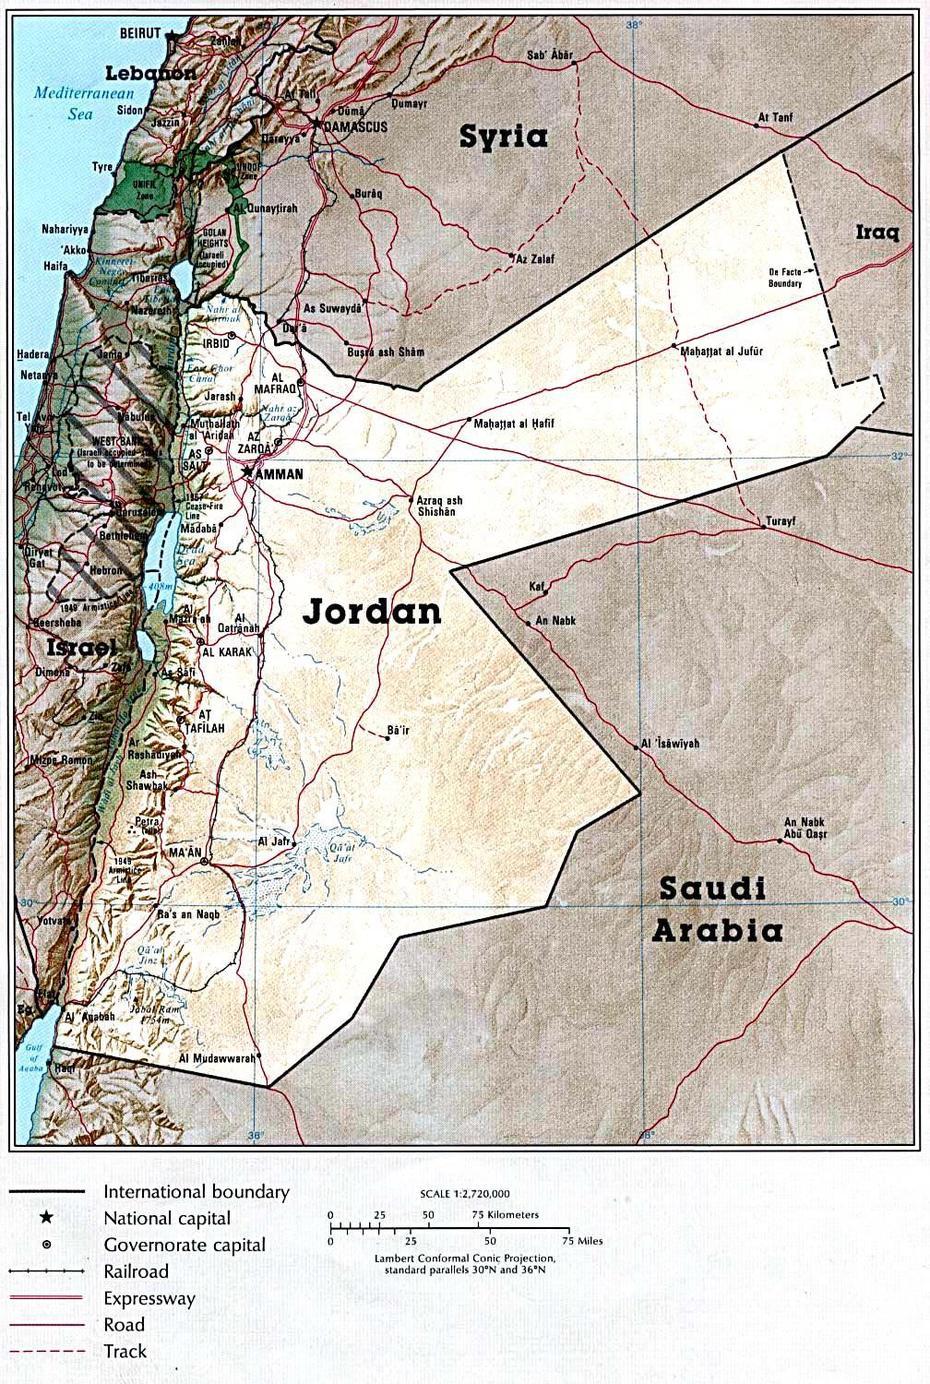 Jordan Maps | Printable Maps Of Jordan For Download, Aţ Ţurrah, Jordan, Of Jordan And Israel, Jordan Asia